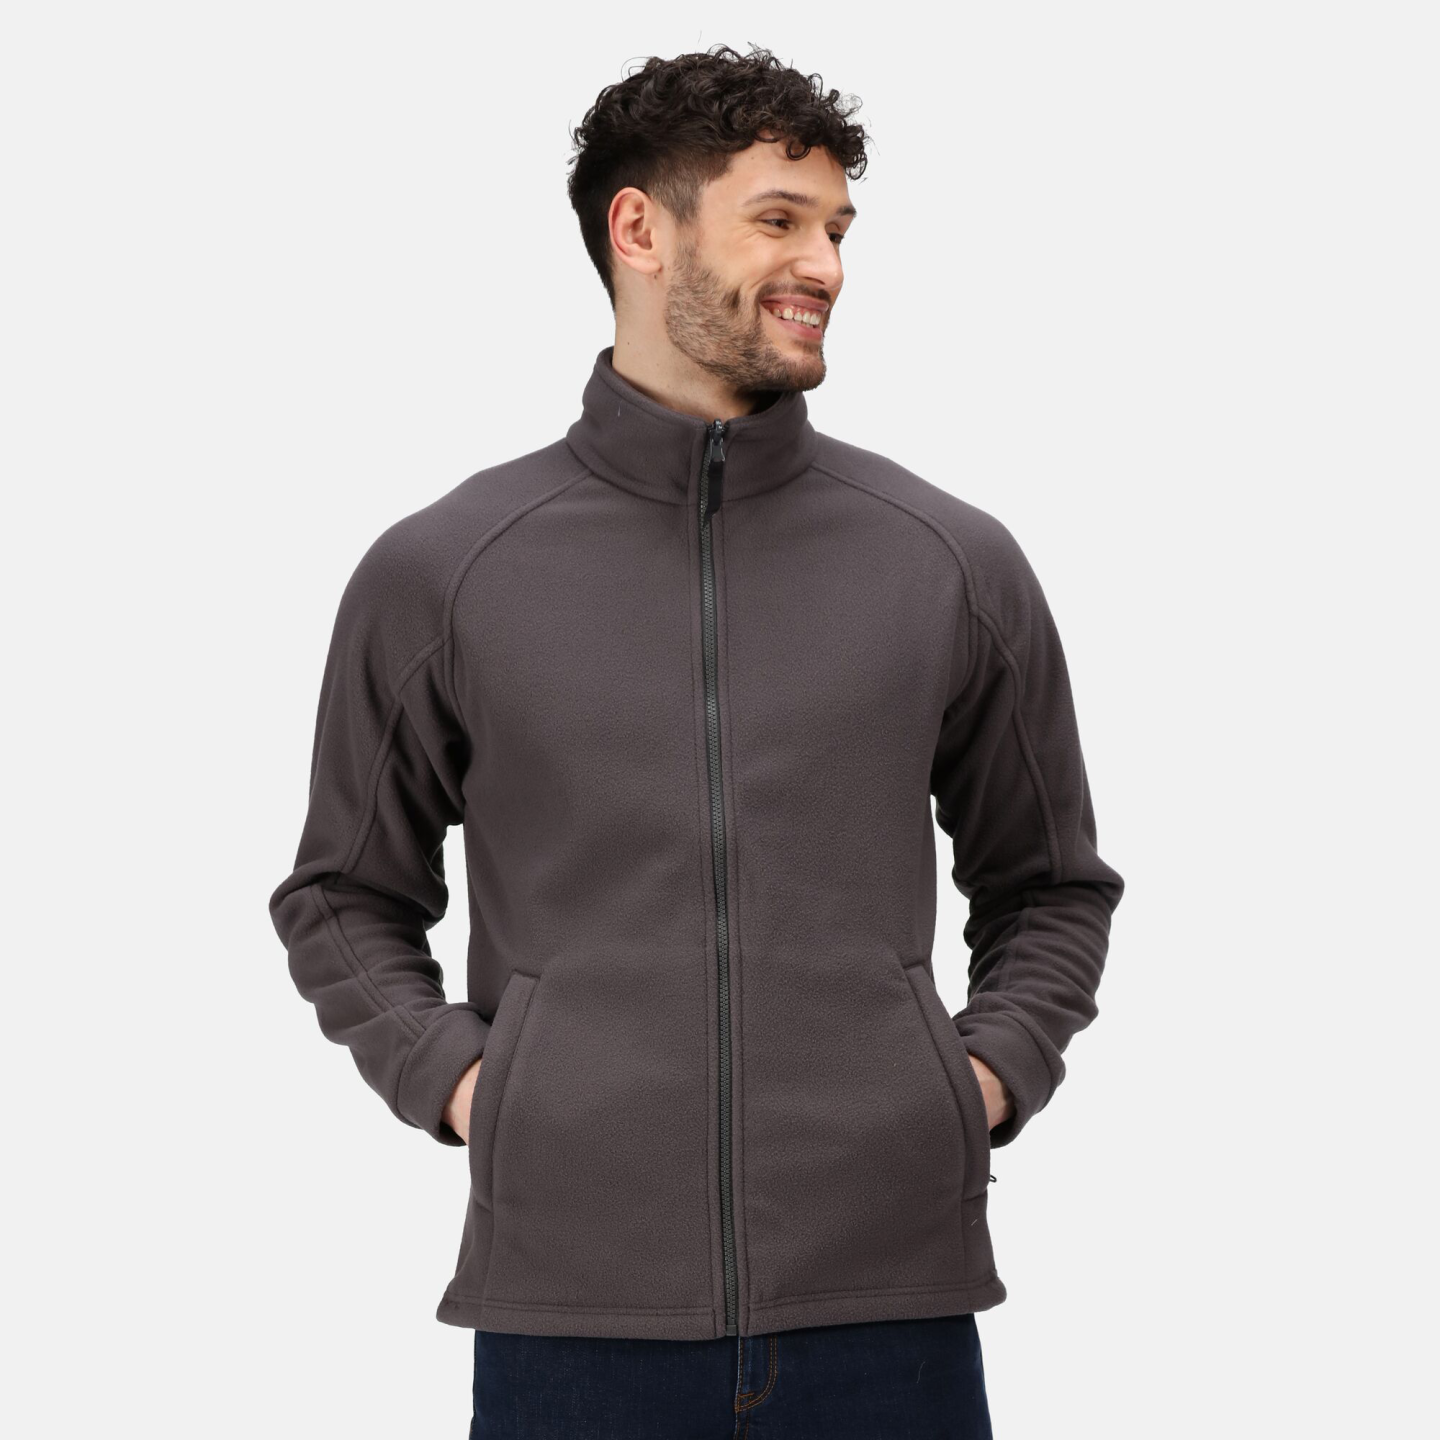 Coats & Jackets - Industrial Workwear